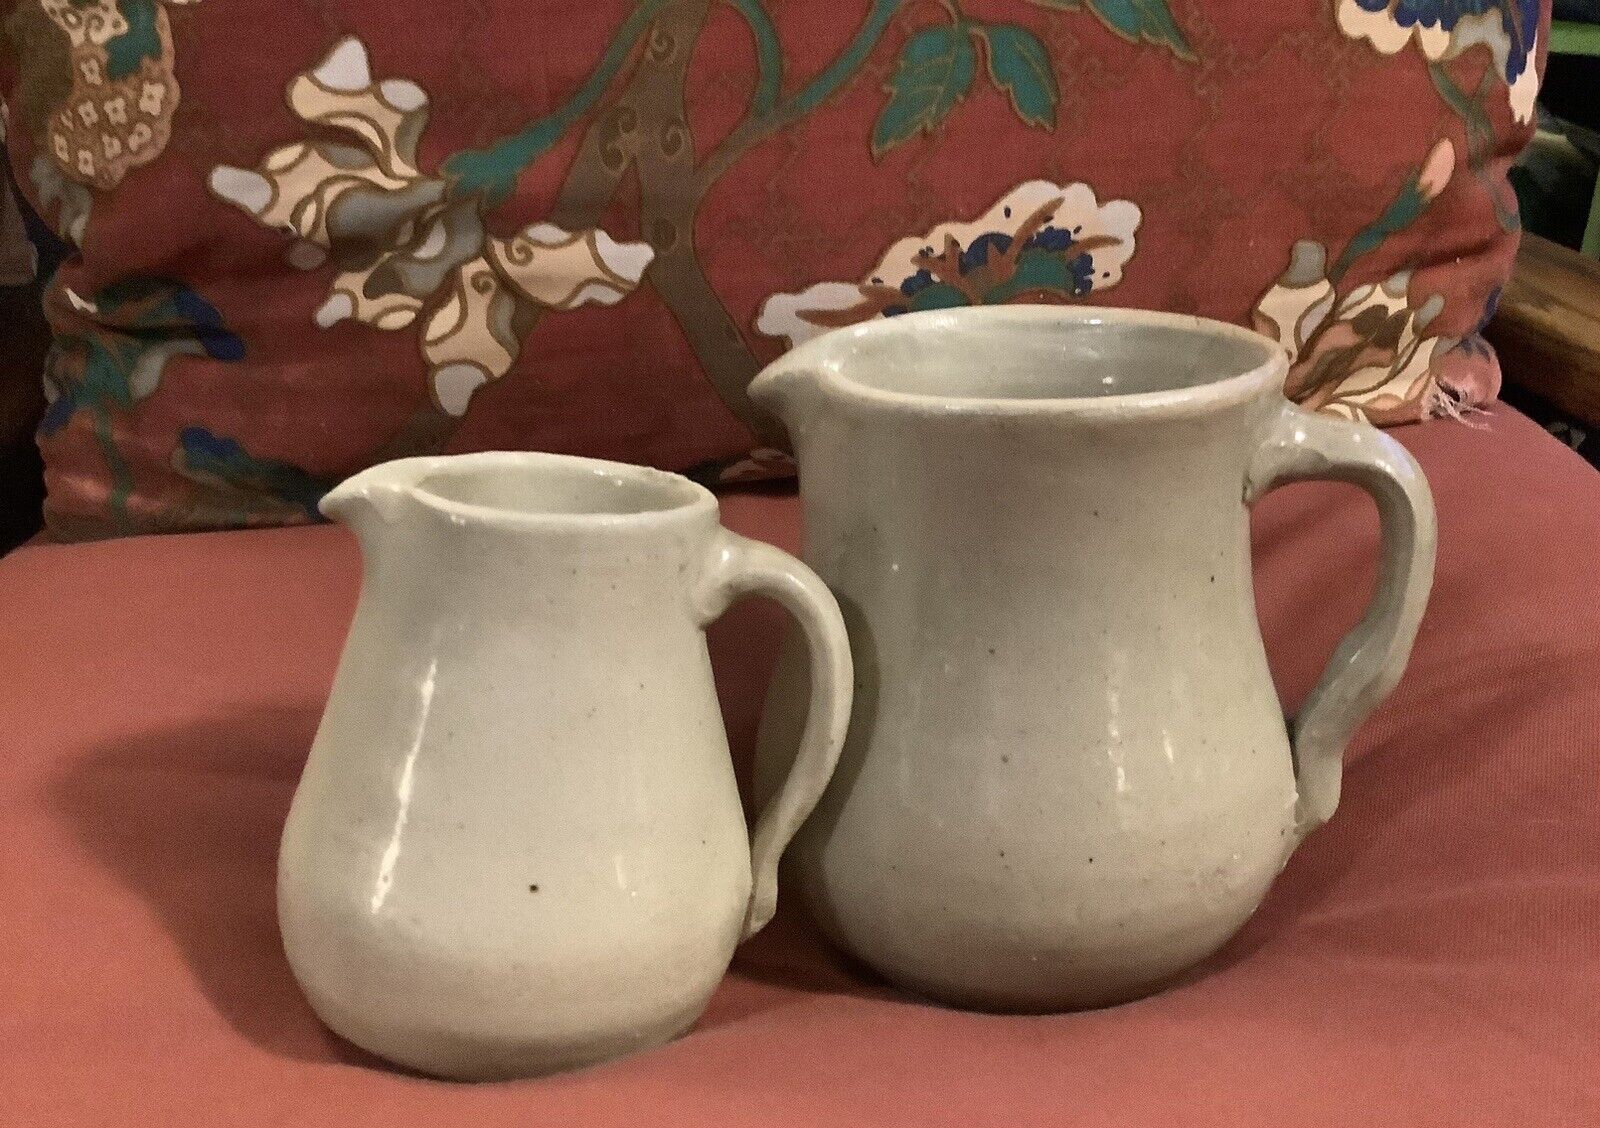 Norman Smith Potter Lawley Alabama 1962 authentic handmade cream jug & milk jug